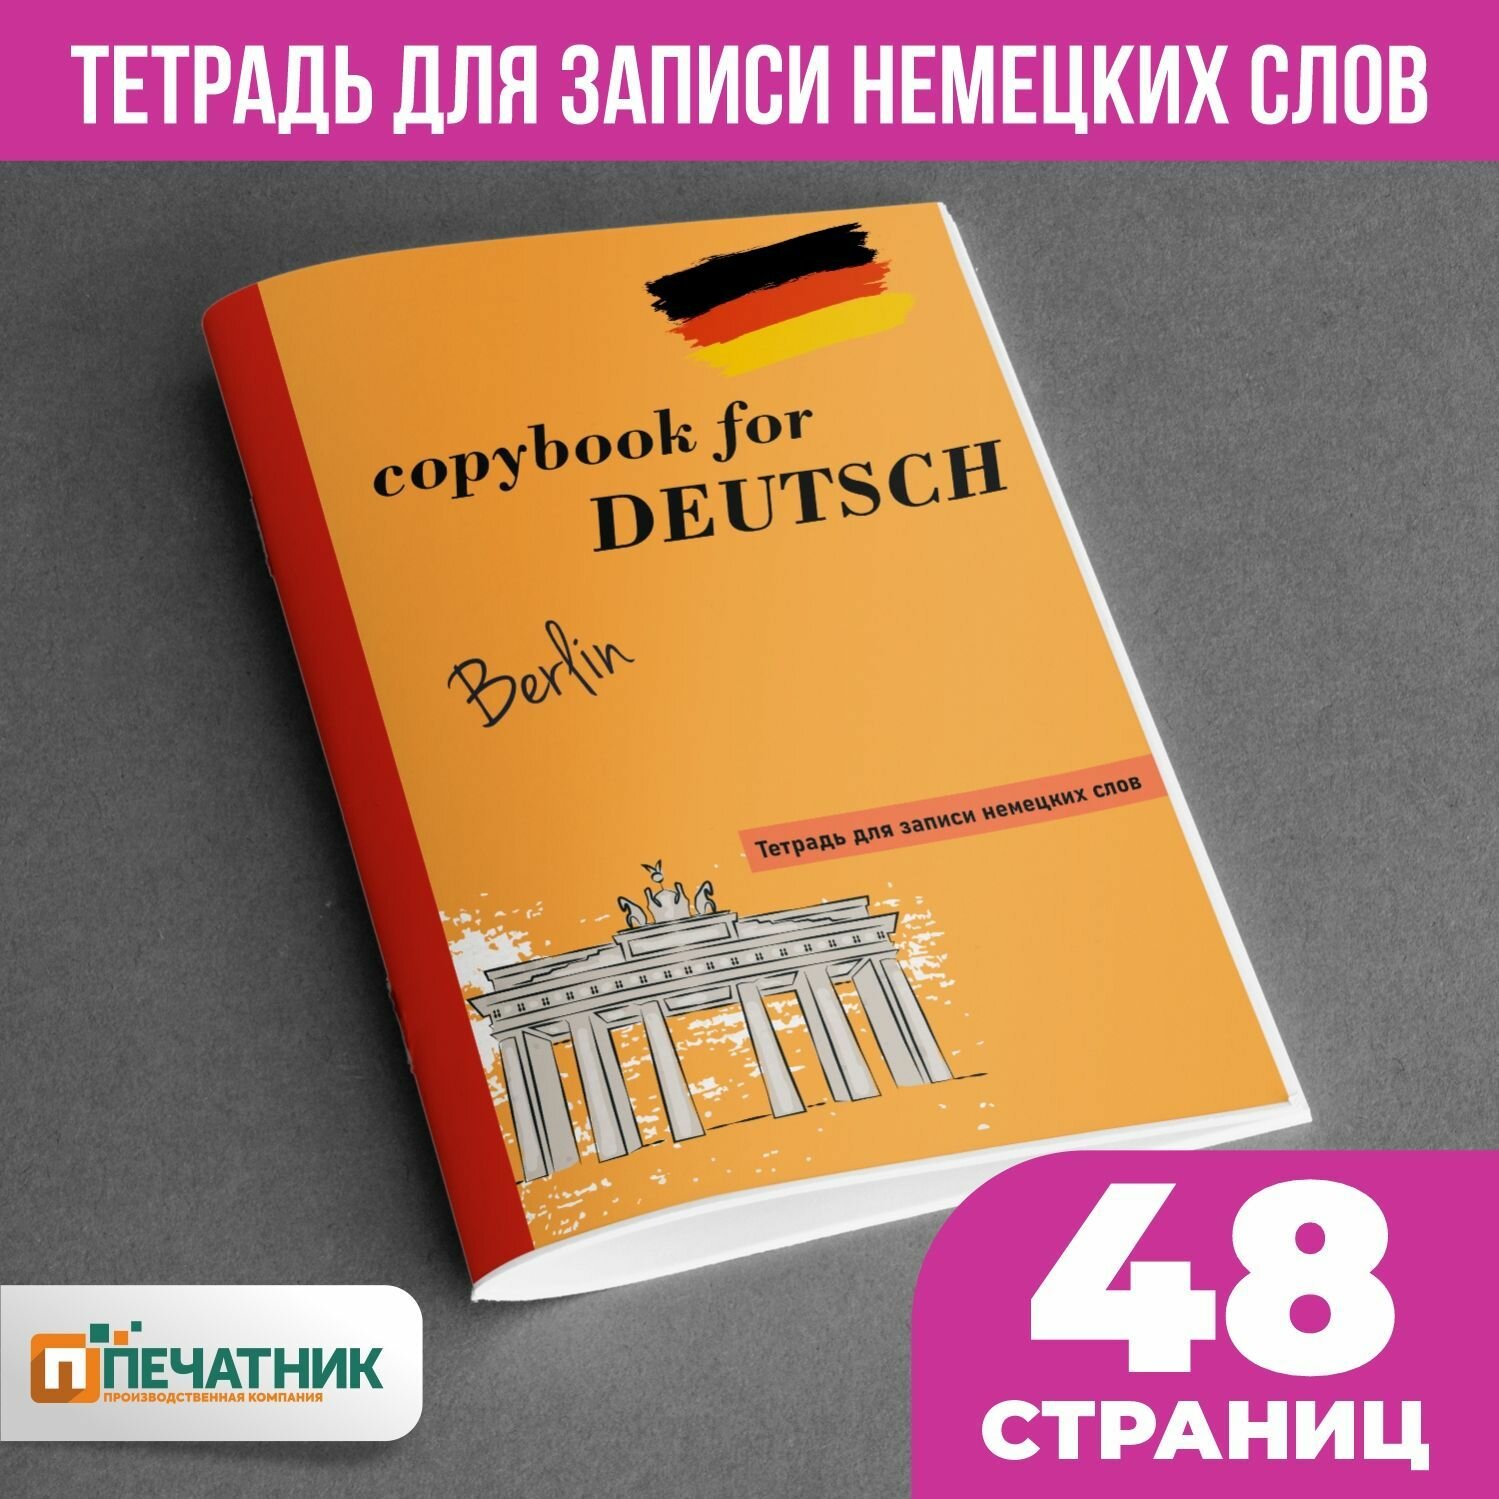 Тетрадь для иностранных слов "Немецкий", 48 страниц, Печатник